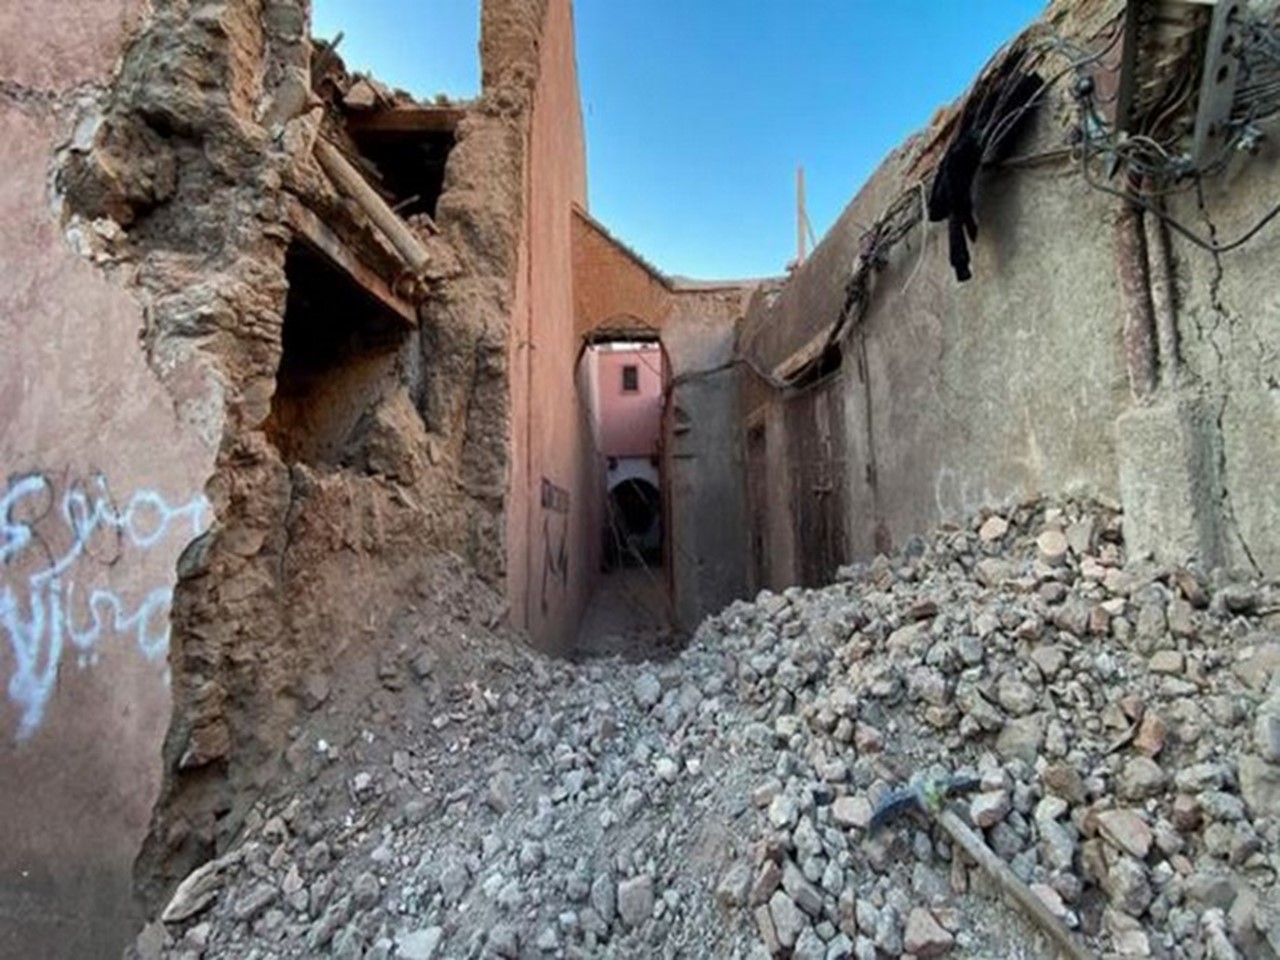 Die Entscheidung Marokkos, die deutsche Hilfe nach dem Erdbeben einzustellen, ist nicht politisch